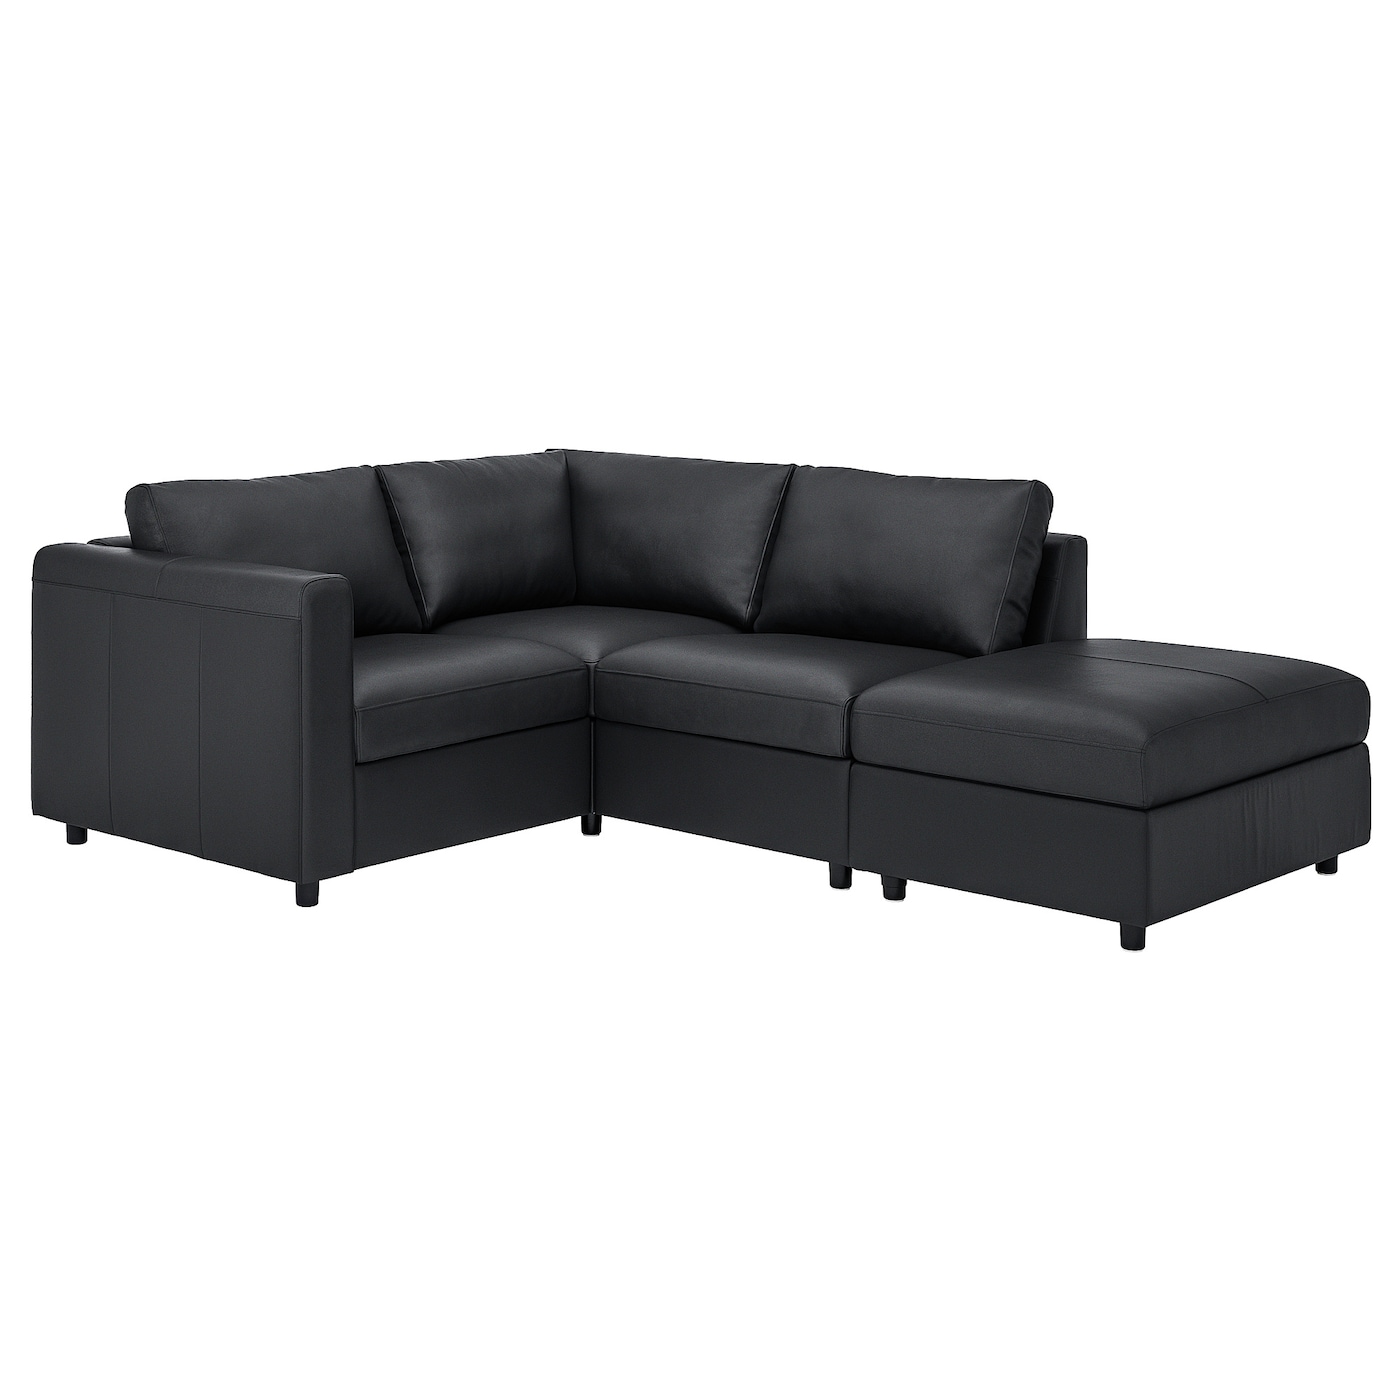 3-местный угловой диван - IKEA VIMLE, 235/179х98х80 см, черный, кожа, ВИМЛЕ ИКЕА